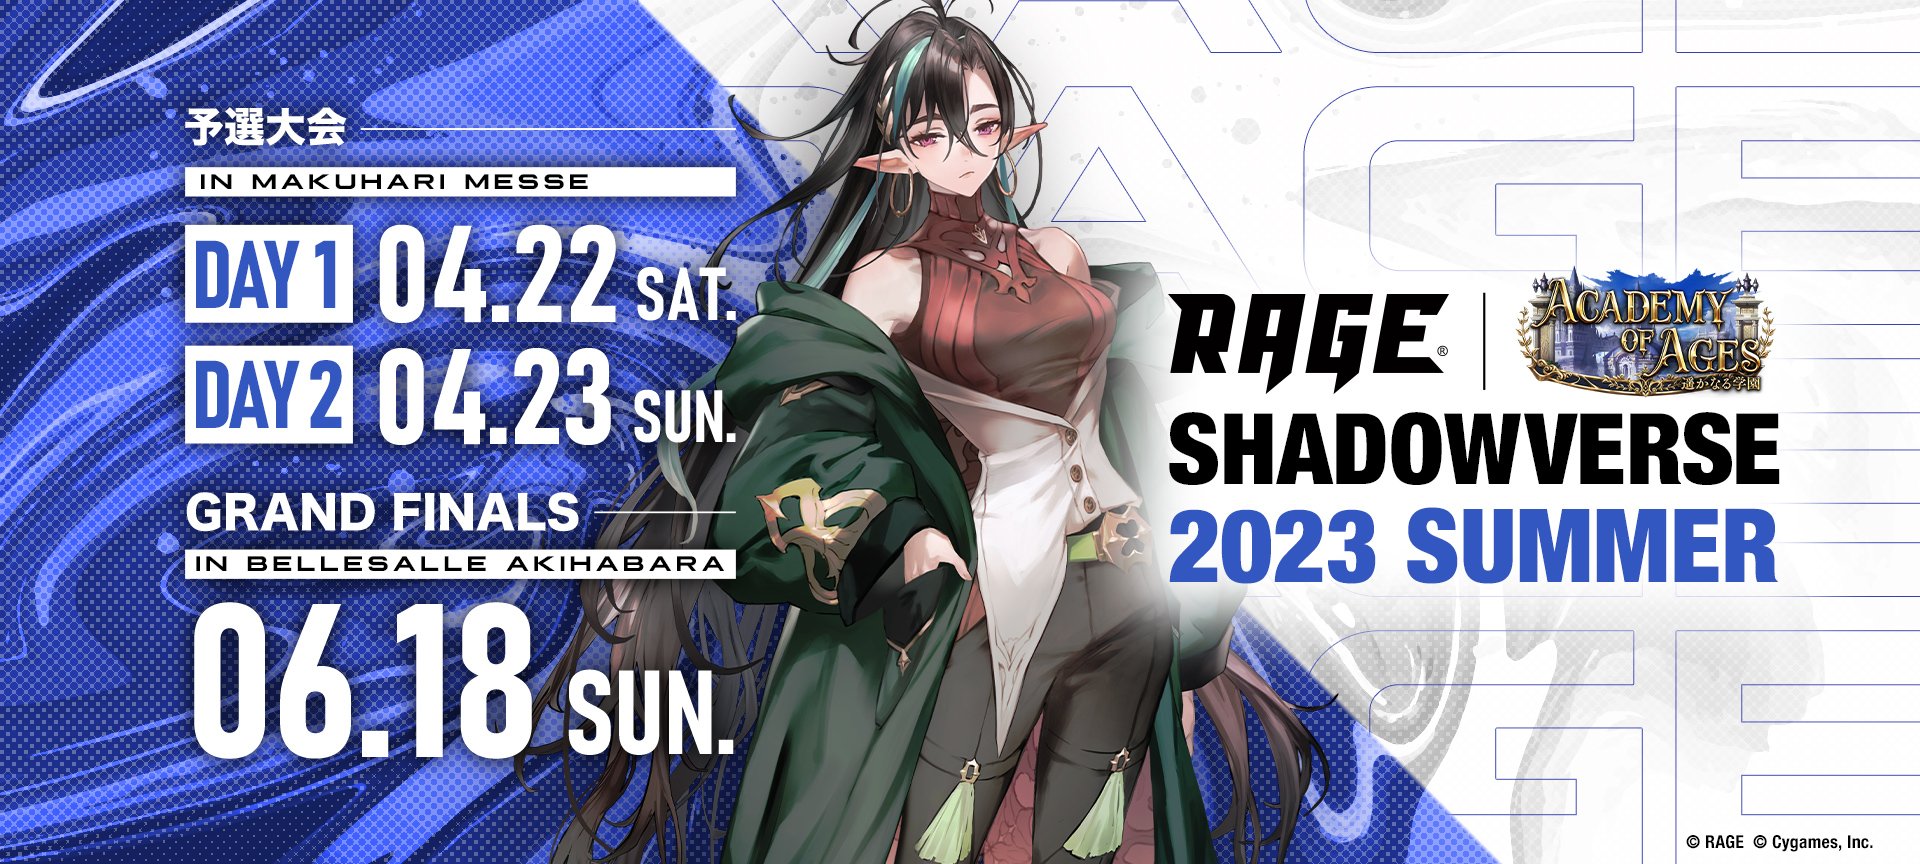 【大会情報】RAGE Shadowverse 2023 Summer GRAND FINALS【2023年6月18日】